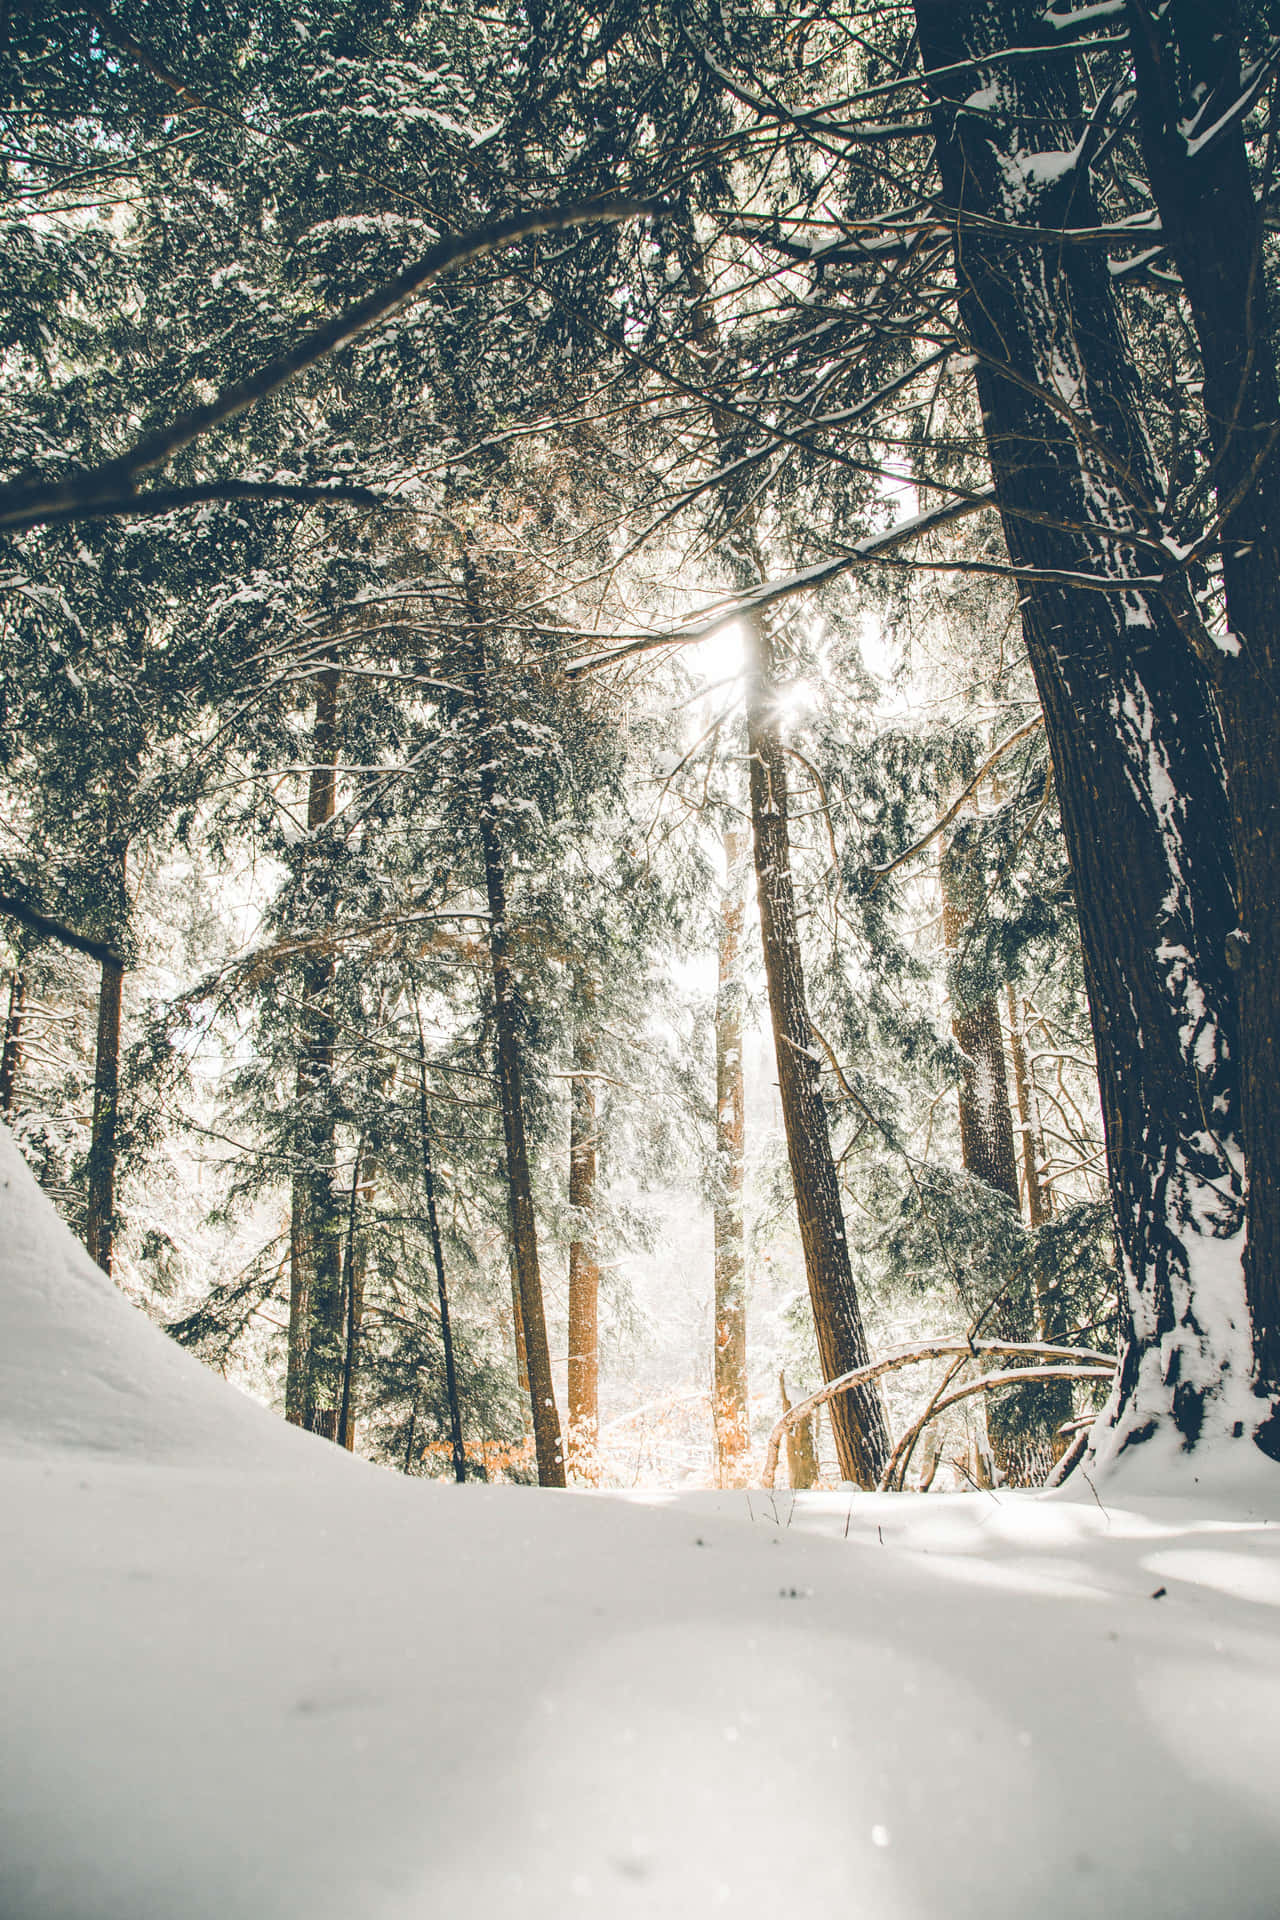 Umafloresta Coberta De Neve Com A Luz Do Sol Brilhando Através Das Árvores